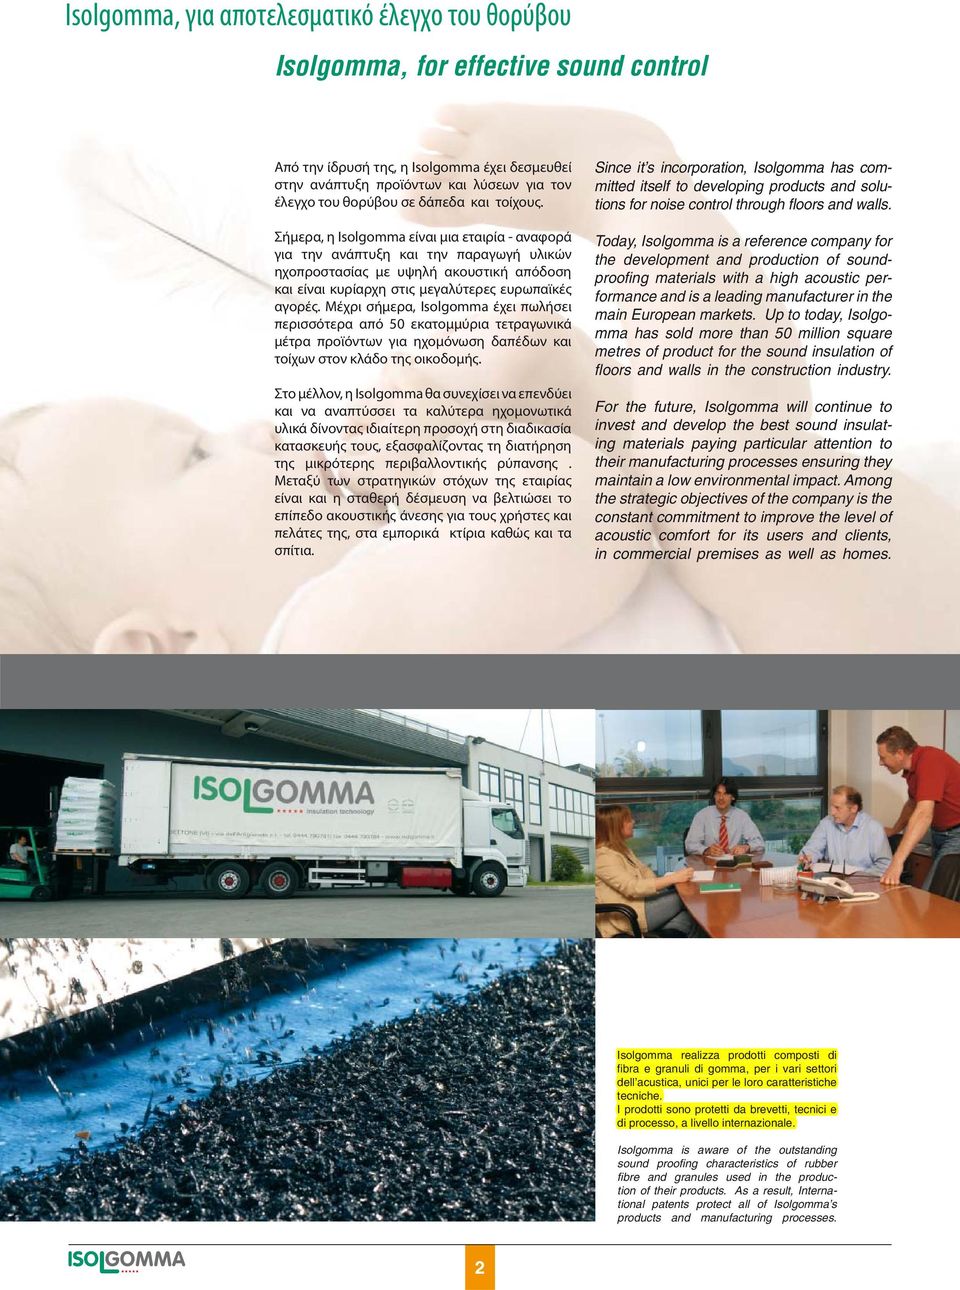 Σήμερα, η Isolgomma είναι μια εταιρία - αναφορά για την ανάπτυξη και την παραγωγή υλικών ηχοπροστασίας με υψηλή ακουστική απόδοση και είναι κυρίαρχη στις μεγαλύτερες ευρωπαϊκές αγορές.